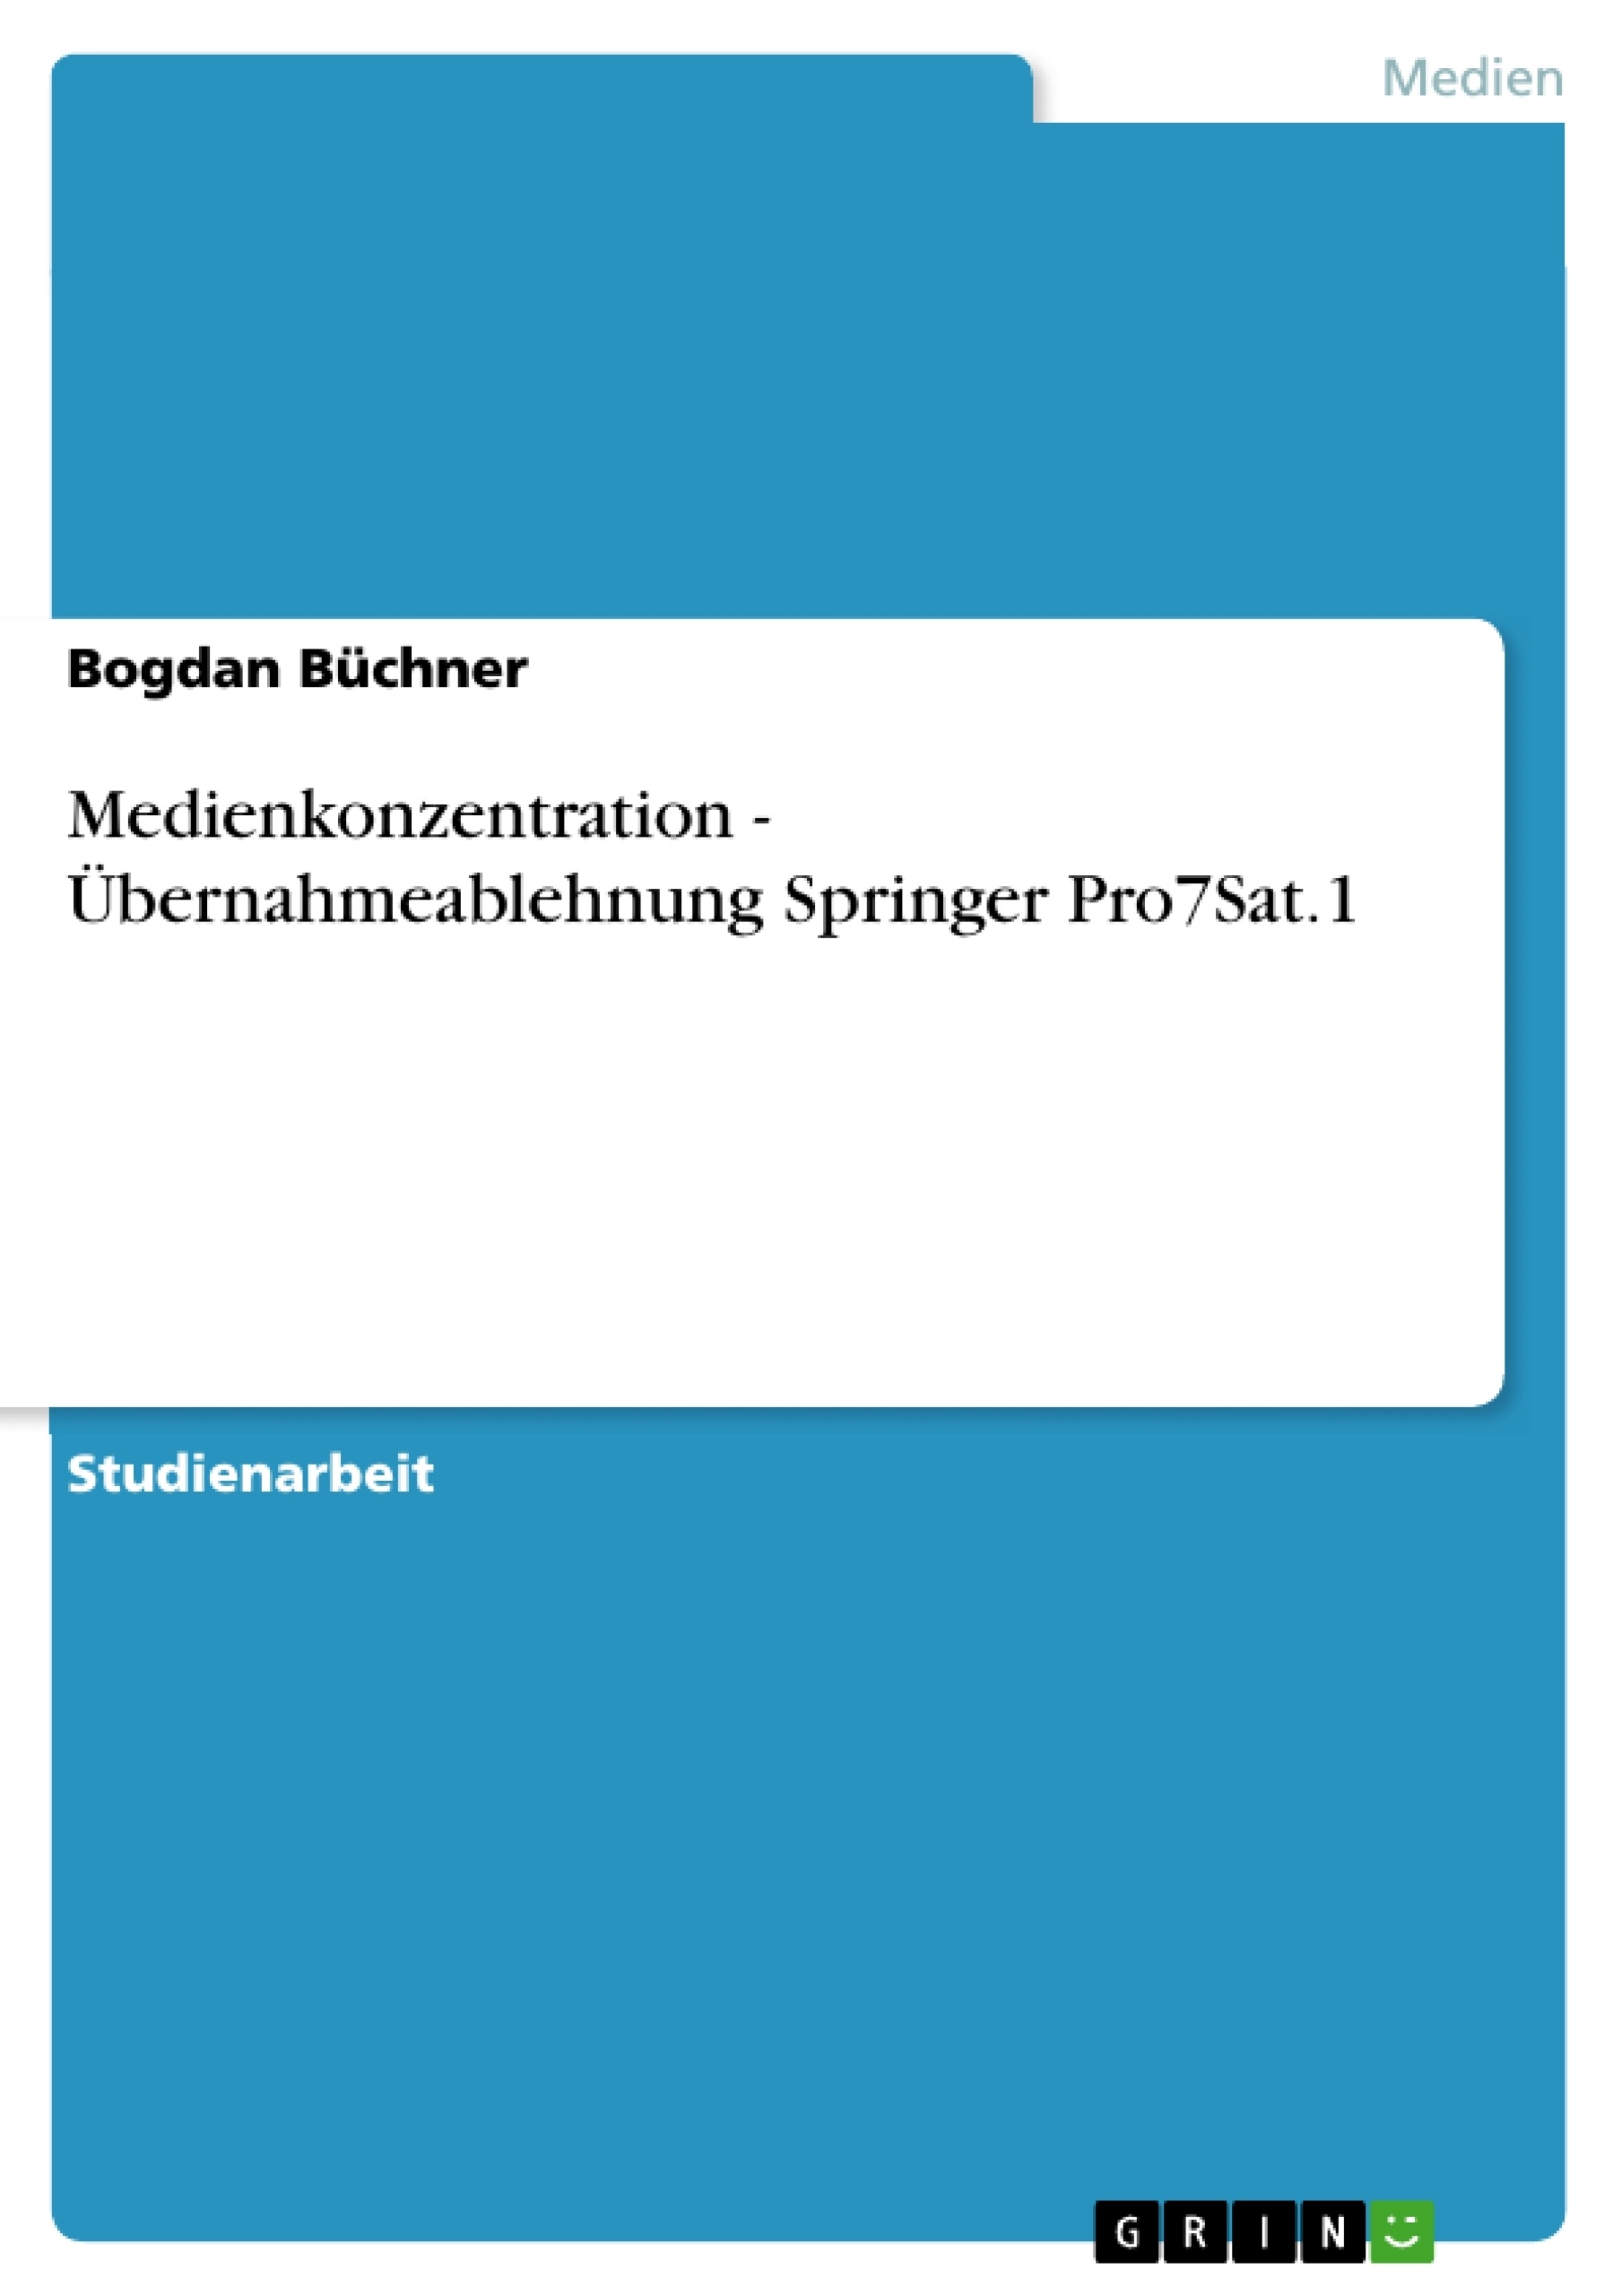 Titre: Medienkonzentration - Übernahmeablehnung Springer Pro7Sat.1